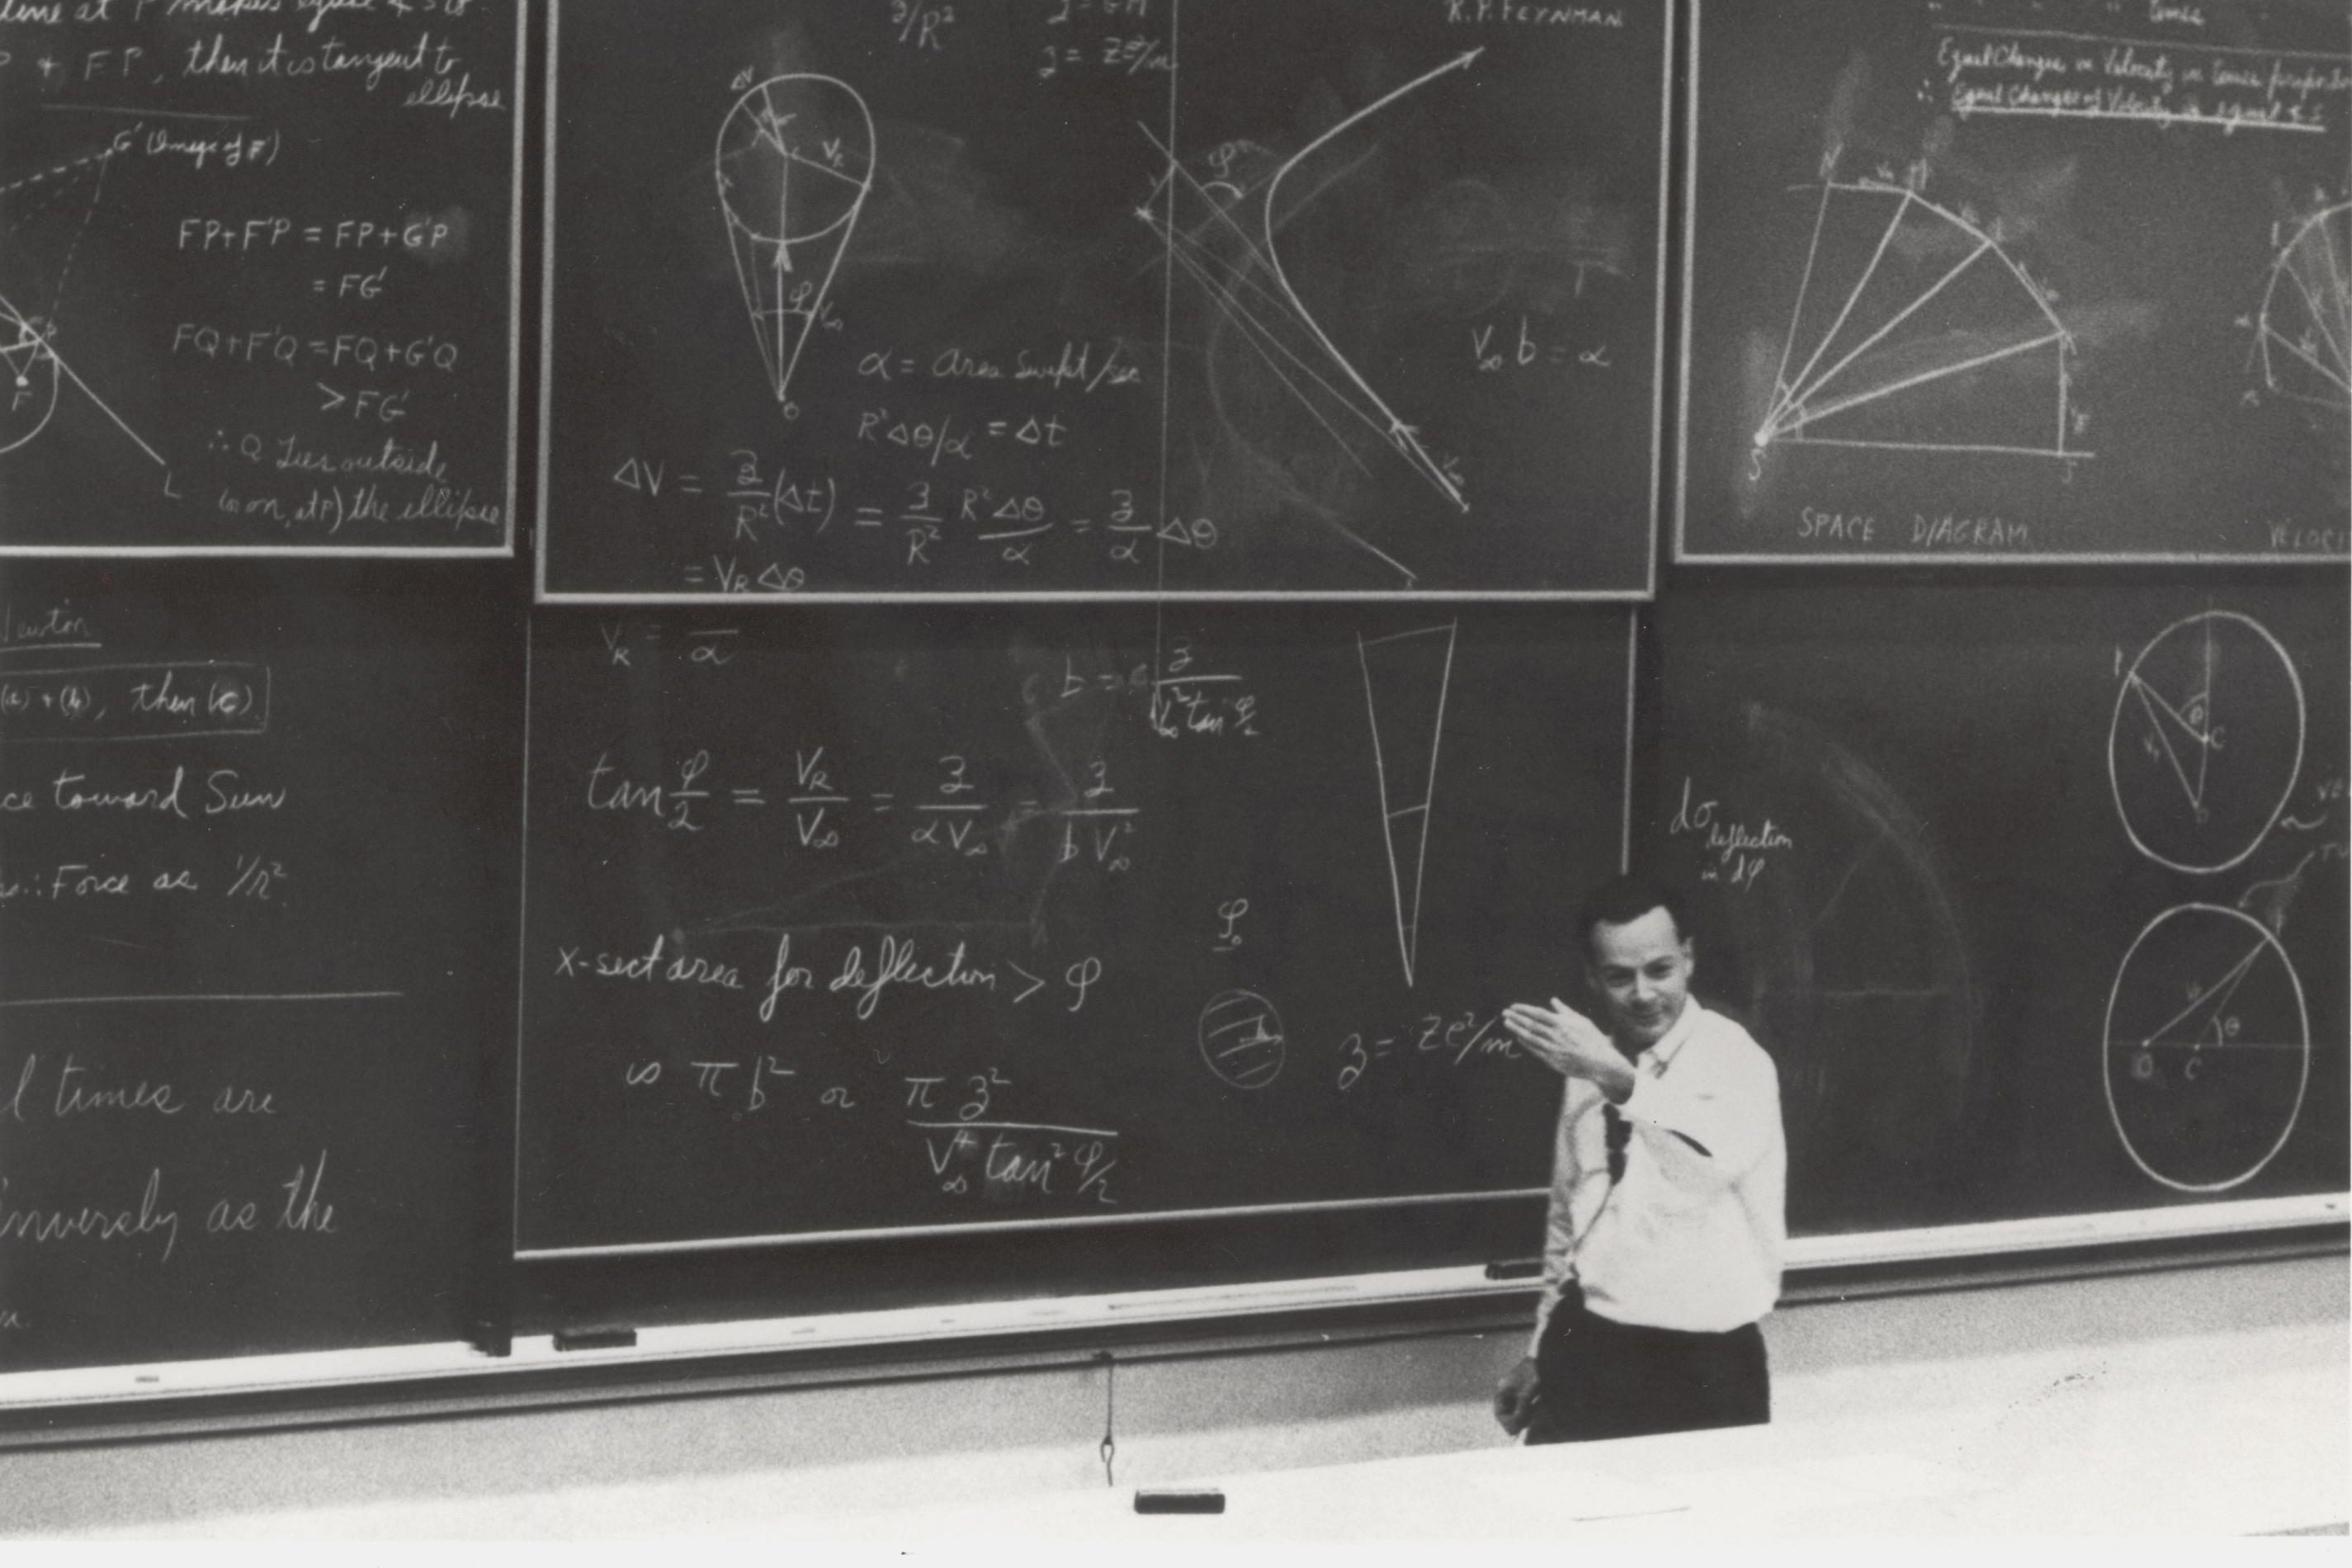 Richard Feynman in front of large black board